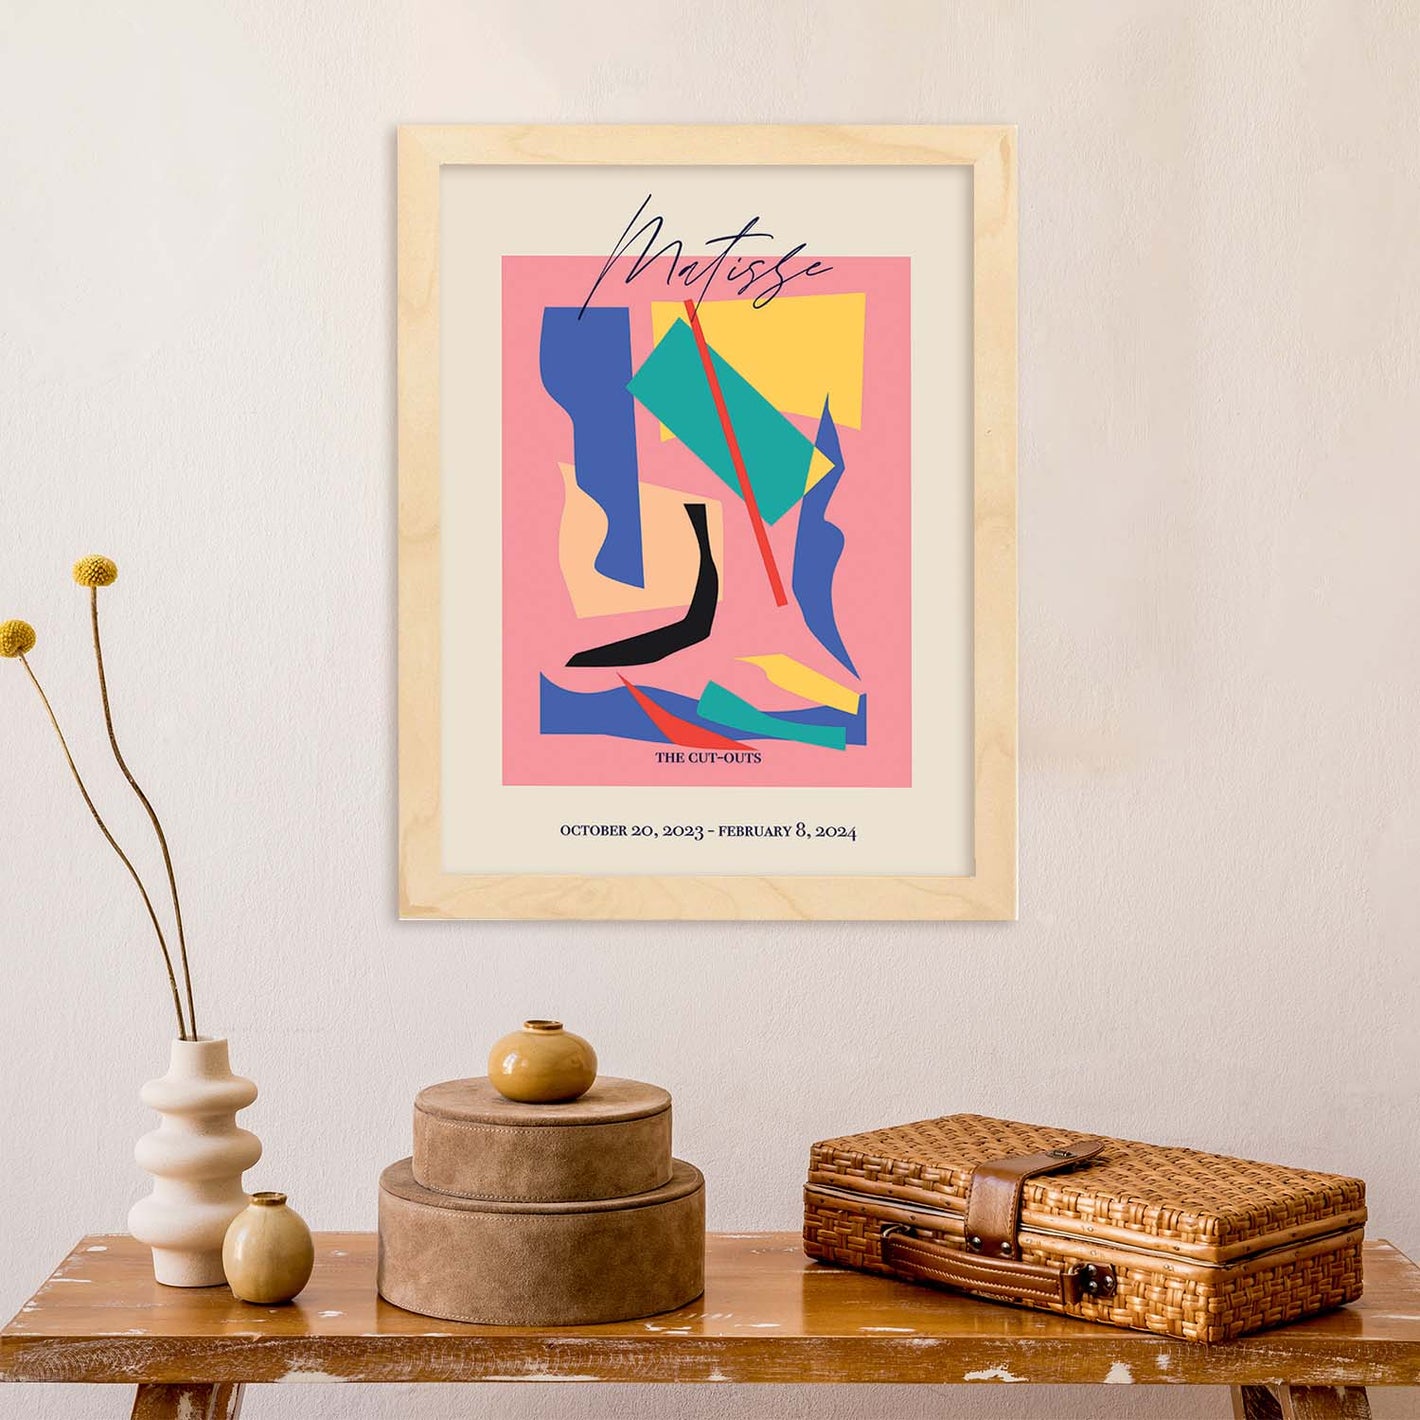 Imagen principal de la colección de láminas de exposición de Matisse: Una vista panorámica de una galería de arte llena de coloridas ilustraciones del artista francés Henri Matisse. La imagen muestra una muestra de las obras de arte impresionistas de Mat